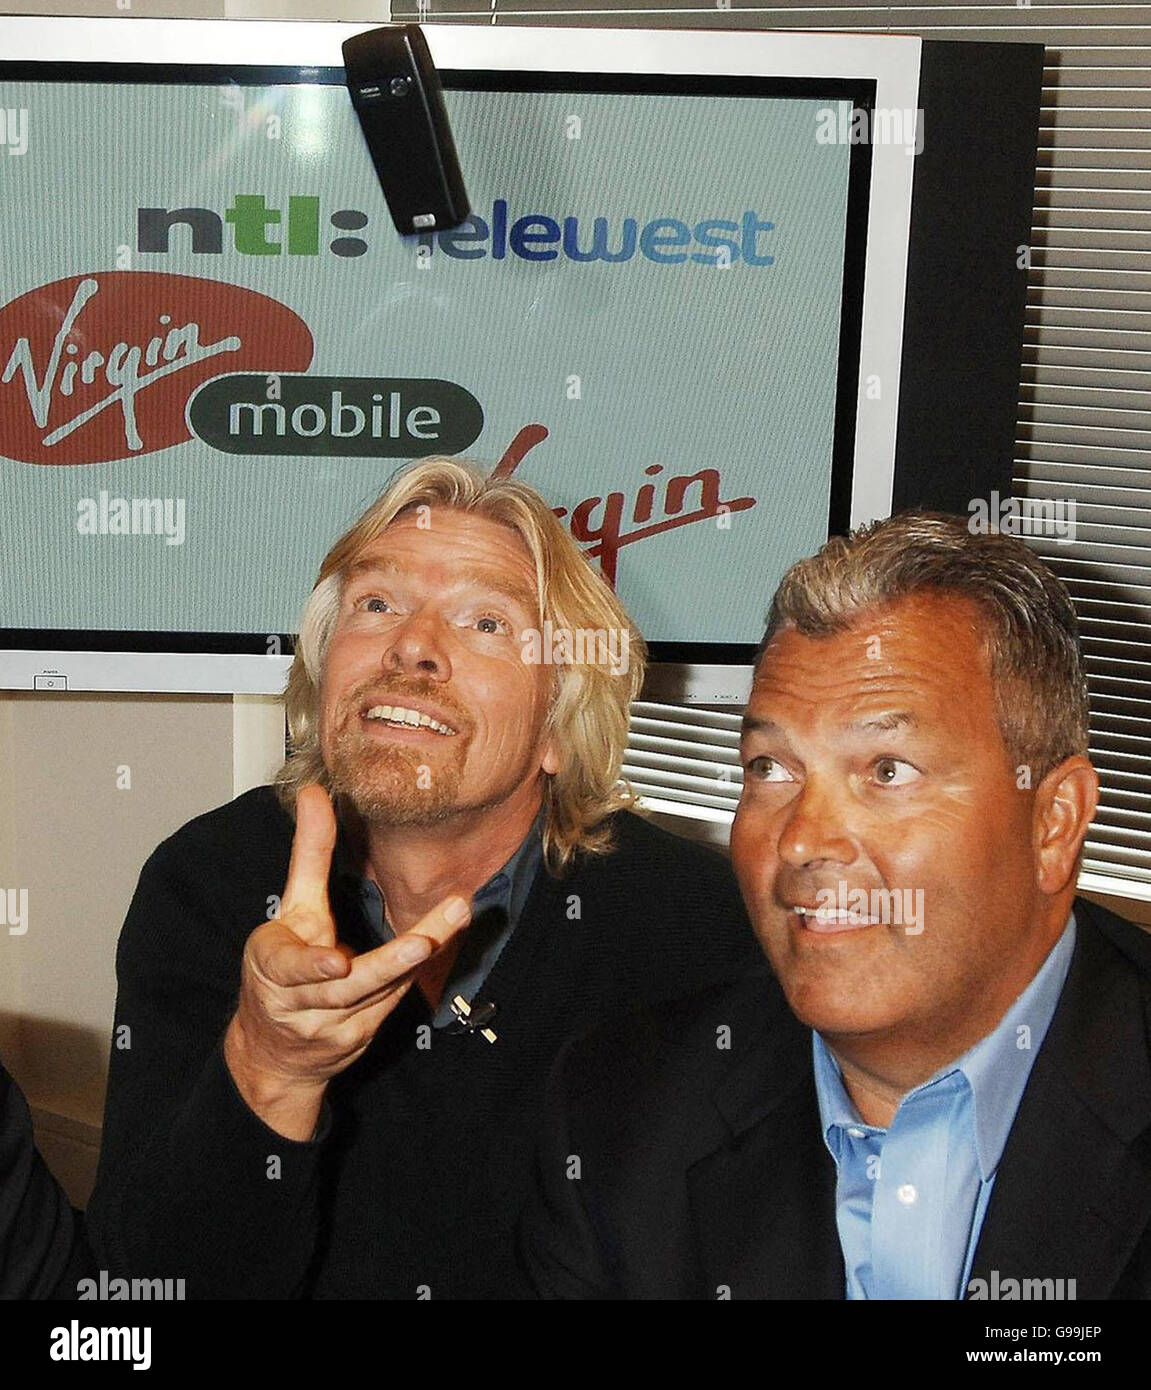 Sir Richard Branson wirft sein Virgin-Handy in die Luft, während er Vorsitzender NTL Telewest Jim Mooney bei einer Pressekonferenz in der Stadt London, Dienstag, den 4. April 2006, sitzt. Nachdem seine Marke Virgin nach der Übernahme seines Virgin Mobile-Geschäfts durch den Kabelgiganten NTL auf 9.4 Millionen britische Haushalte ausgeweitet wurde. Mit der Übernahme von 962.4 Millionen Pfund wird das erste Unternehmen in Großbritannien gegründet, das ein „Quadplay“-Angebot für Kabel-TV, Internetzugang, Festnetztelefonie und Mobilfunkdienste propagiert. Siehe PA Story CITY Virgin. DRÜCKEN Sie VERBANDSFOTO. Bildnachweis sollte lauten: John Stillwell/PA Stockfoto